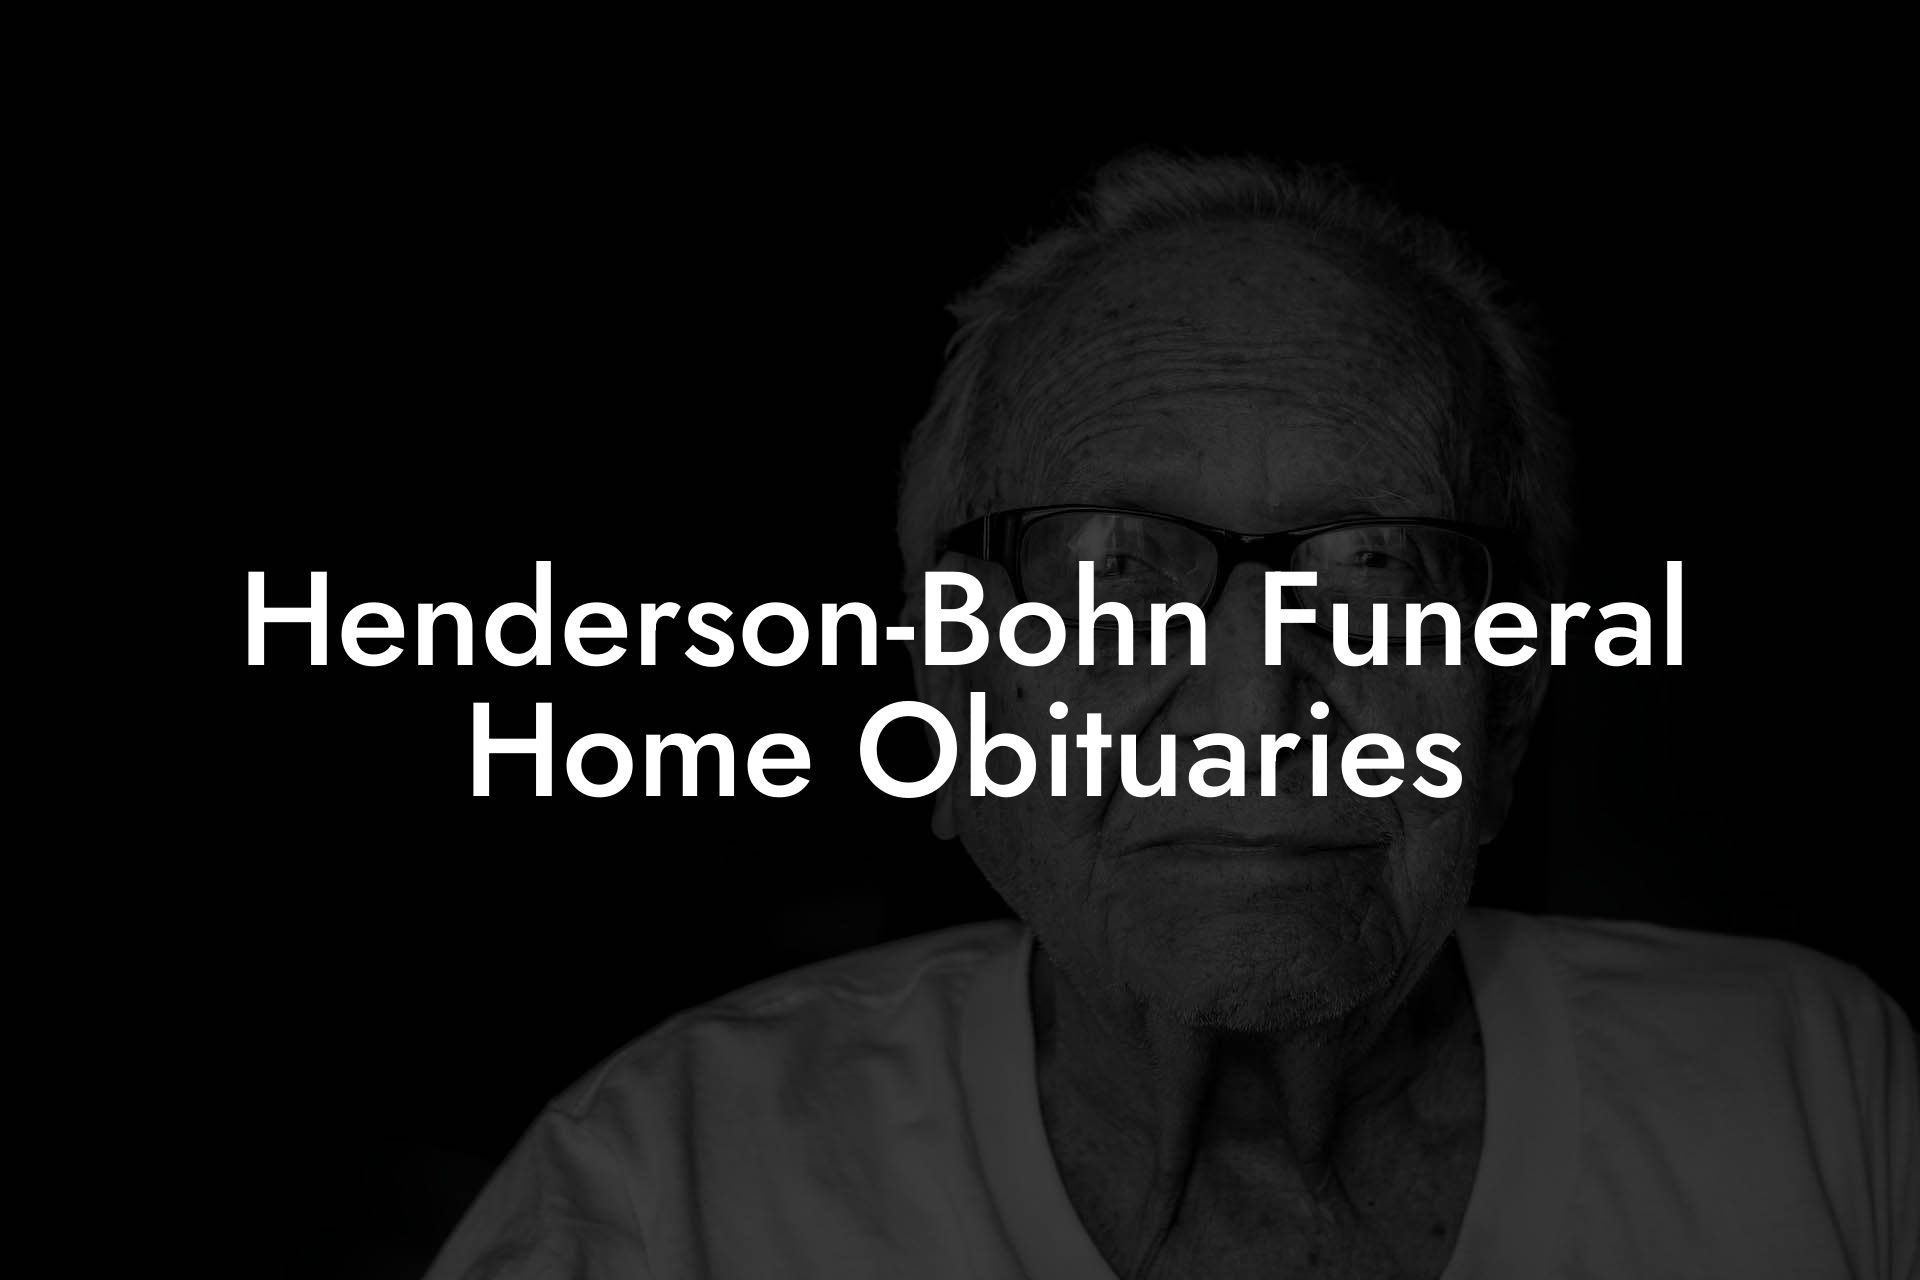 Henderson-Bohn Funeral Home Obituaries